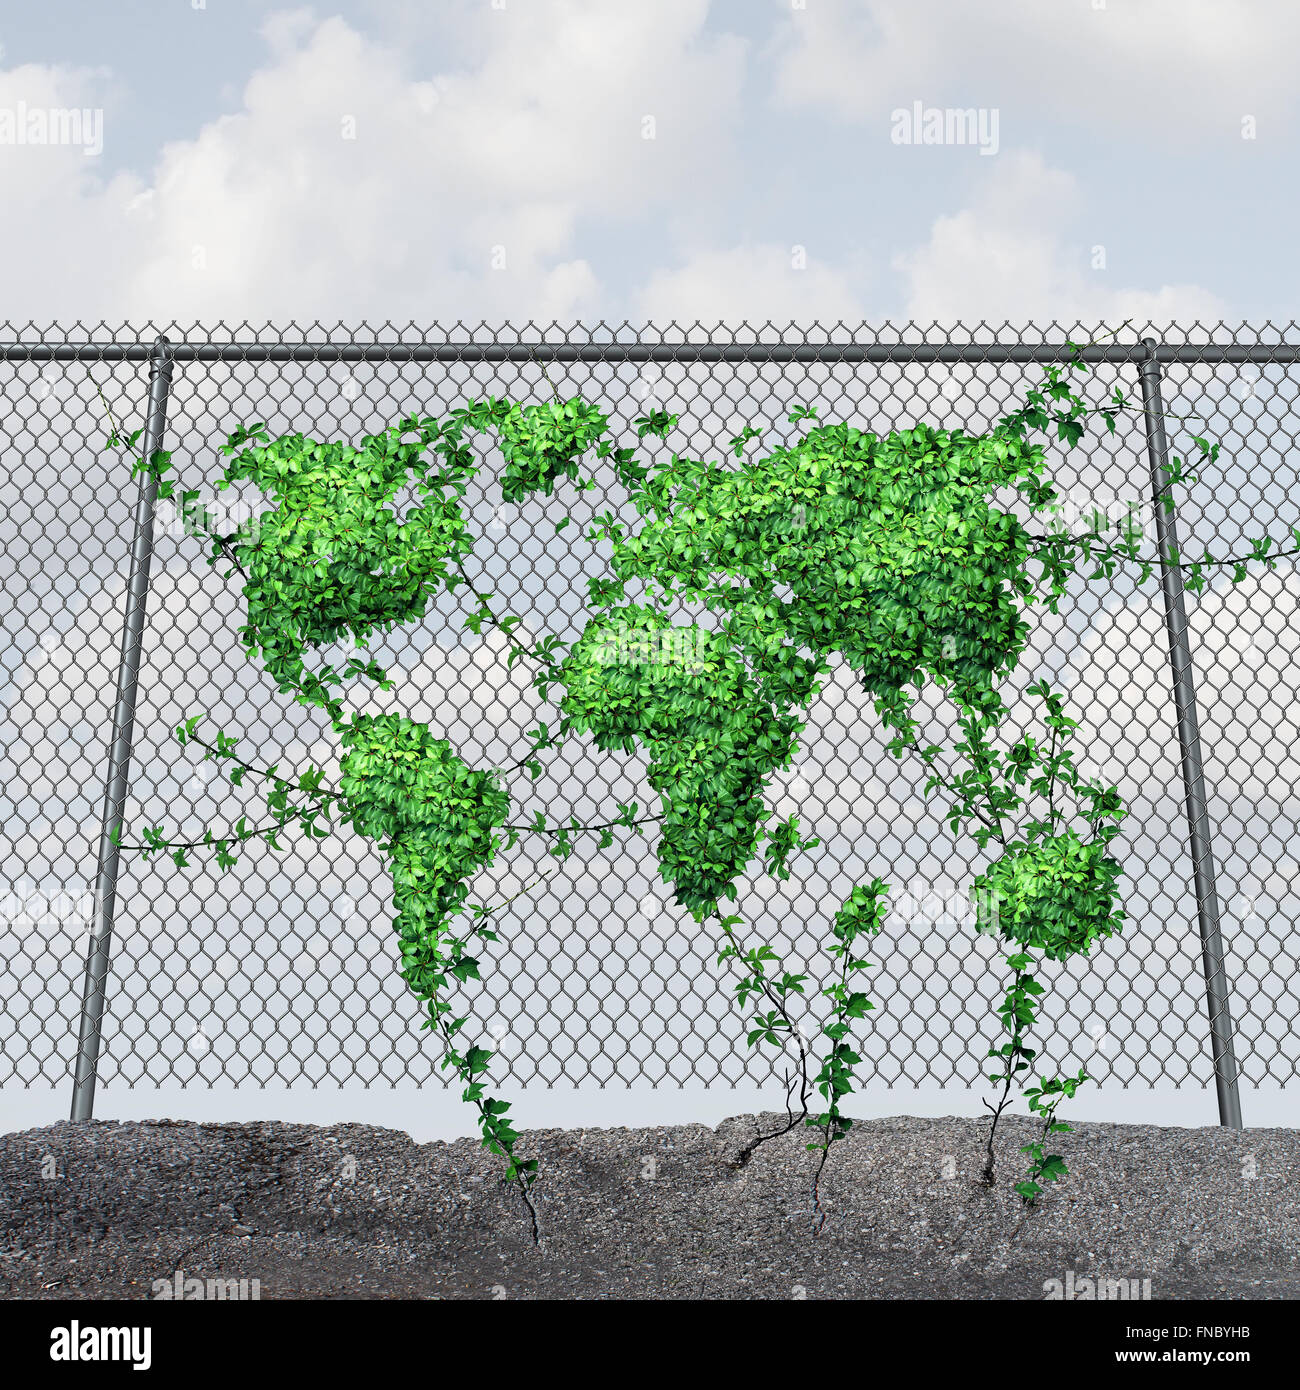 Earth Day-Konzept und Umweltschutz-Symbol als eine Kette link Zaun mit einem grünen Blatt Rebe geprägt als globale Weltkarte des Planeten als Symbol des Frühlings. Stockfoto